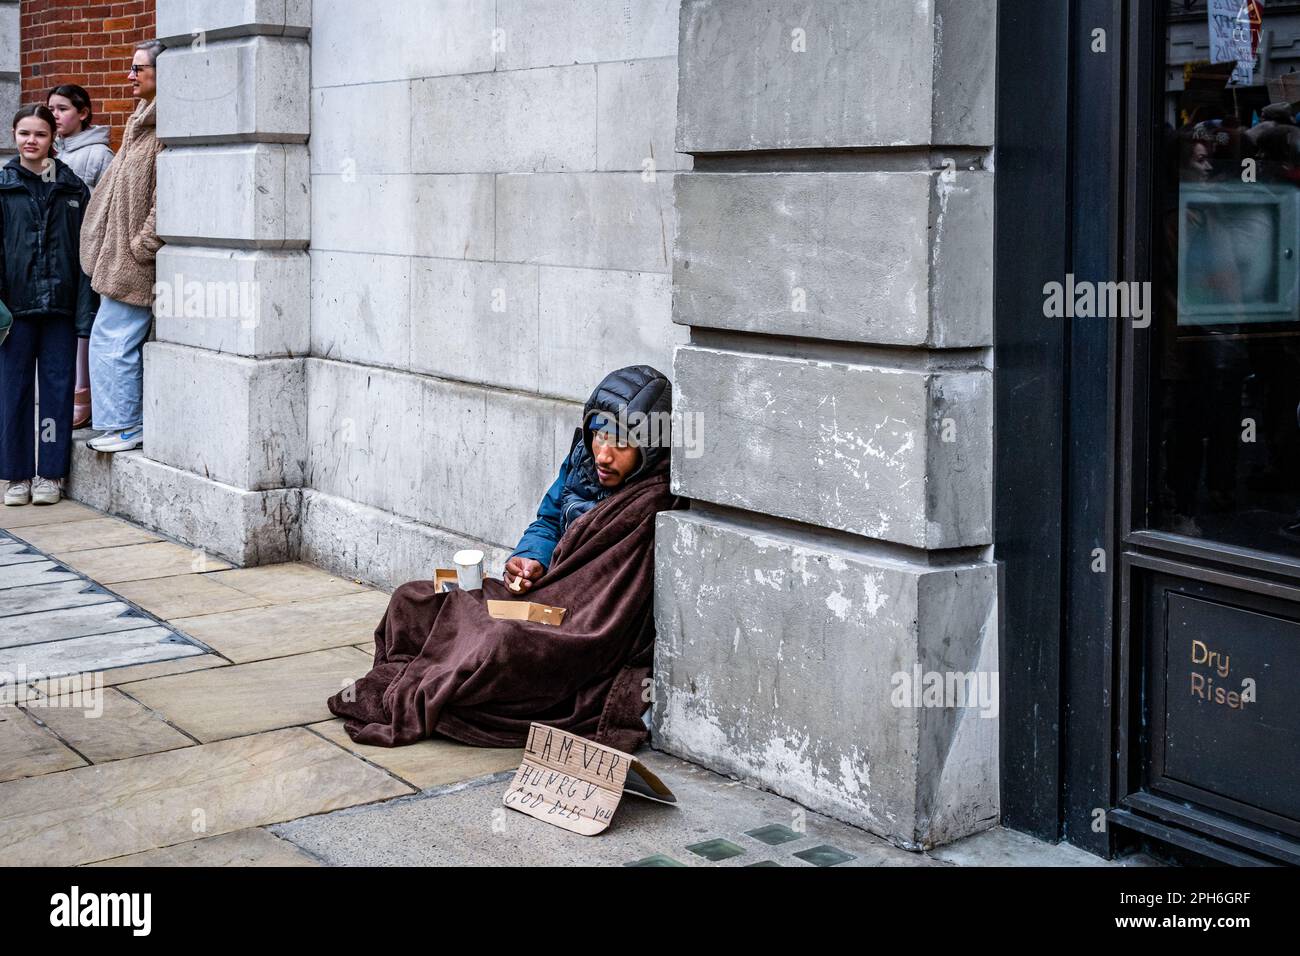 Ein obdachloser Mann sitzt auf dem Bürgersteig mit einem Schild und bittet um Hilfe. Central London, England, Großbritannien Stockfoto